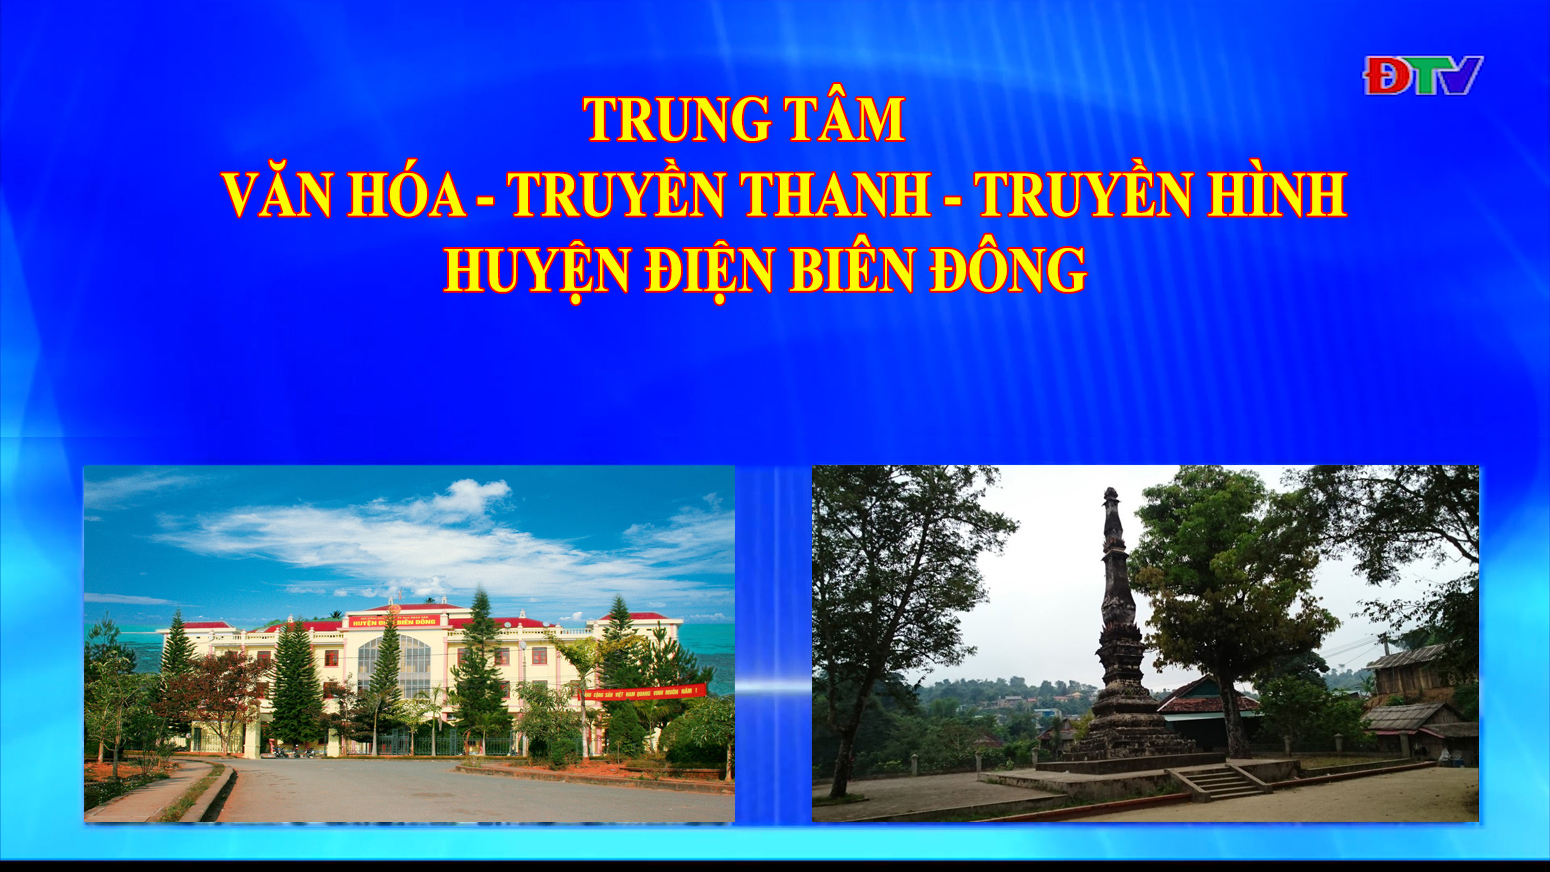 Trung tâm VH-TTTH huyện Điện Biên Đông (Ngày 6-11-2021)